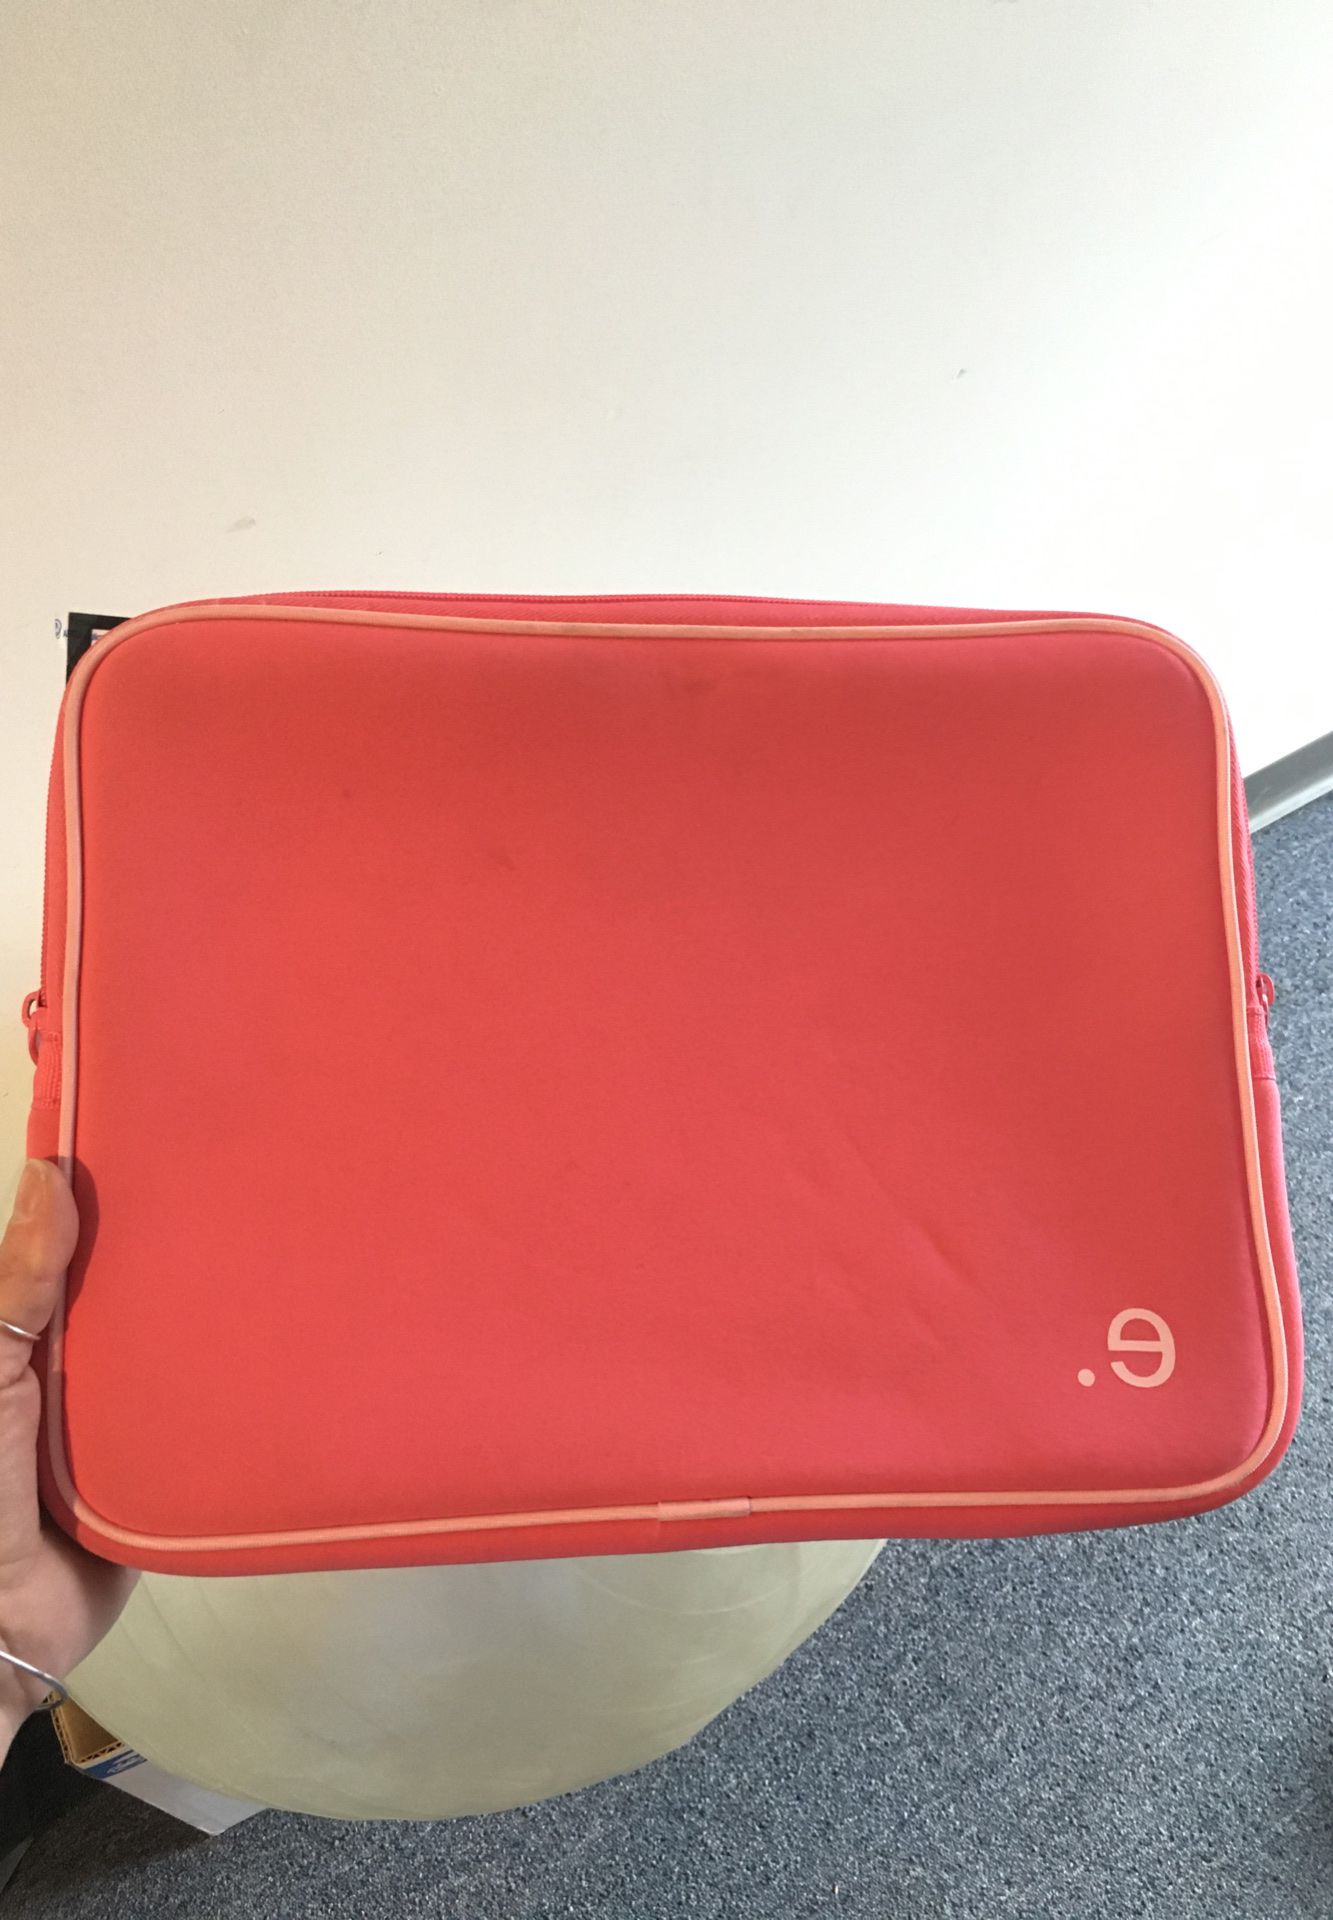 13” Mac book laptop case